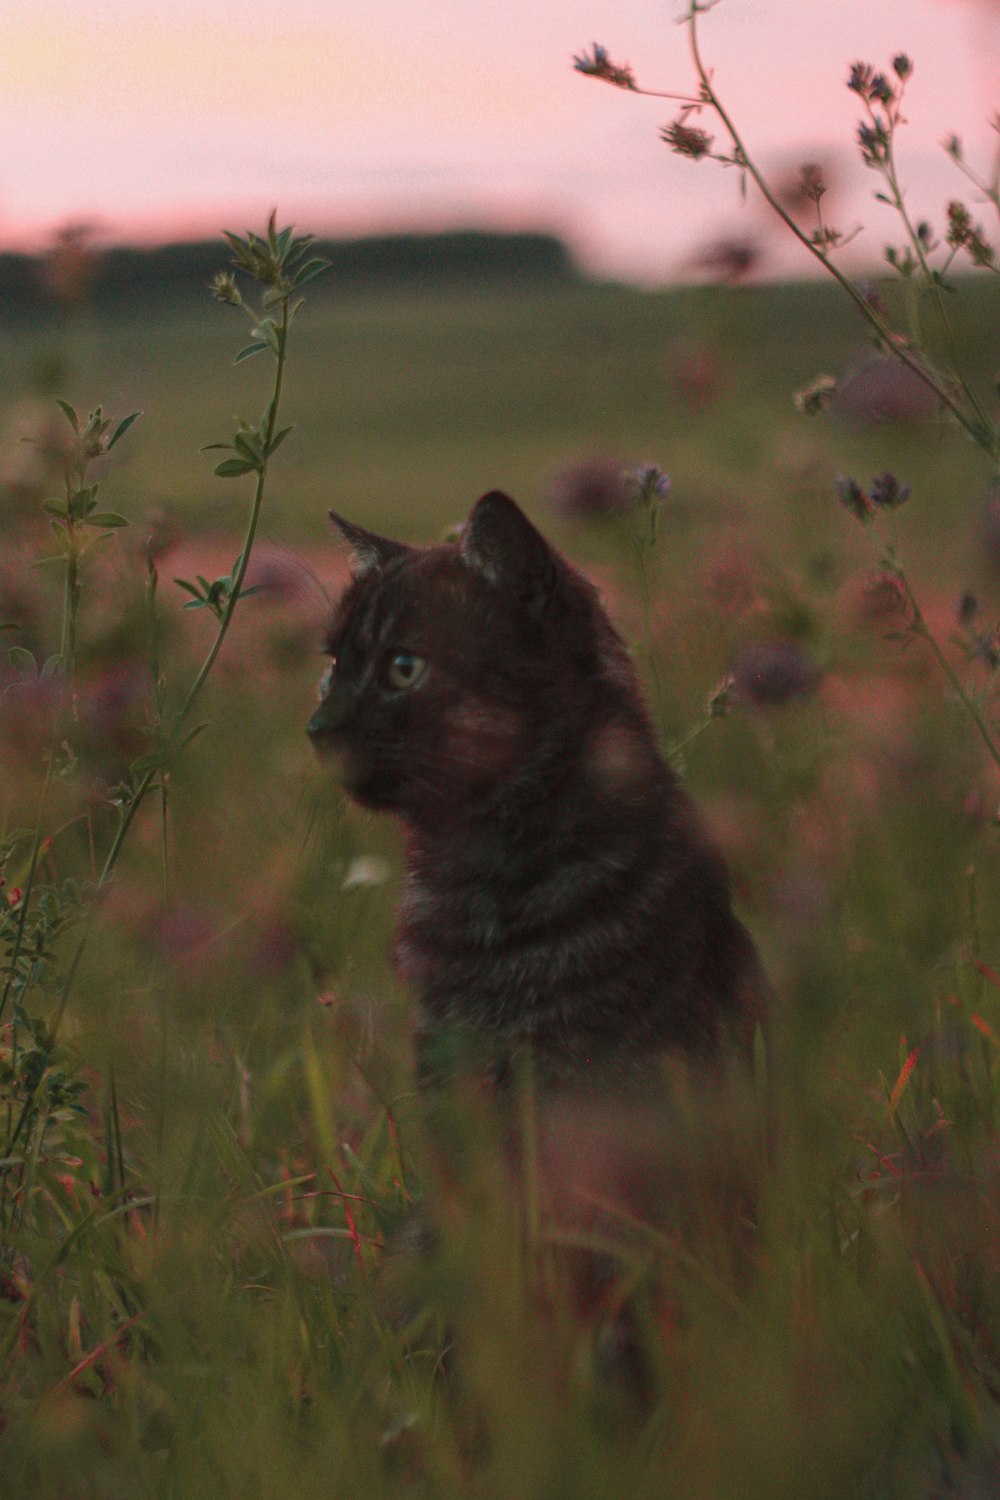 a cat sitting in a field